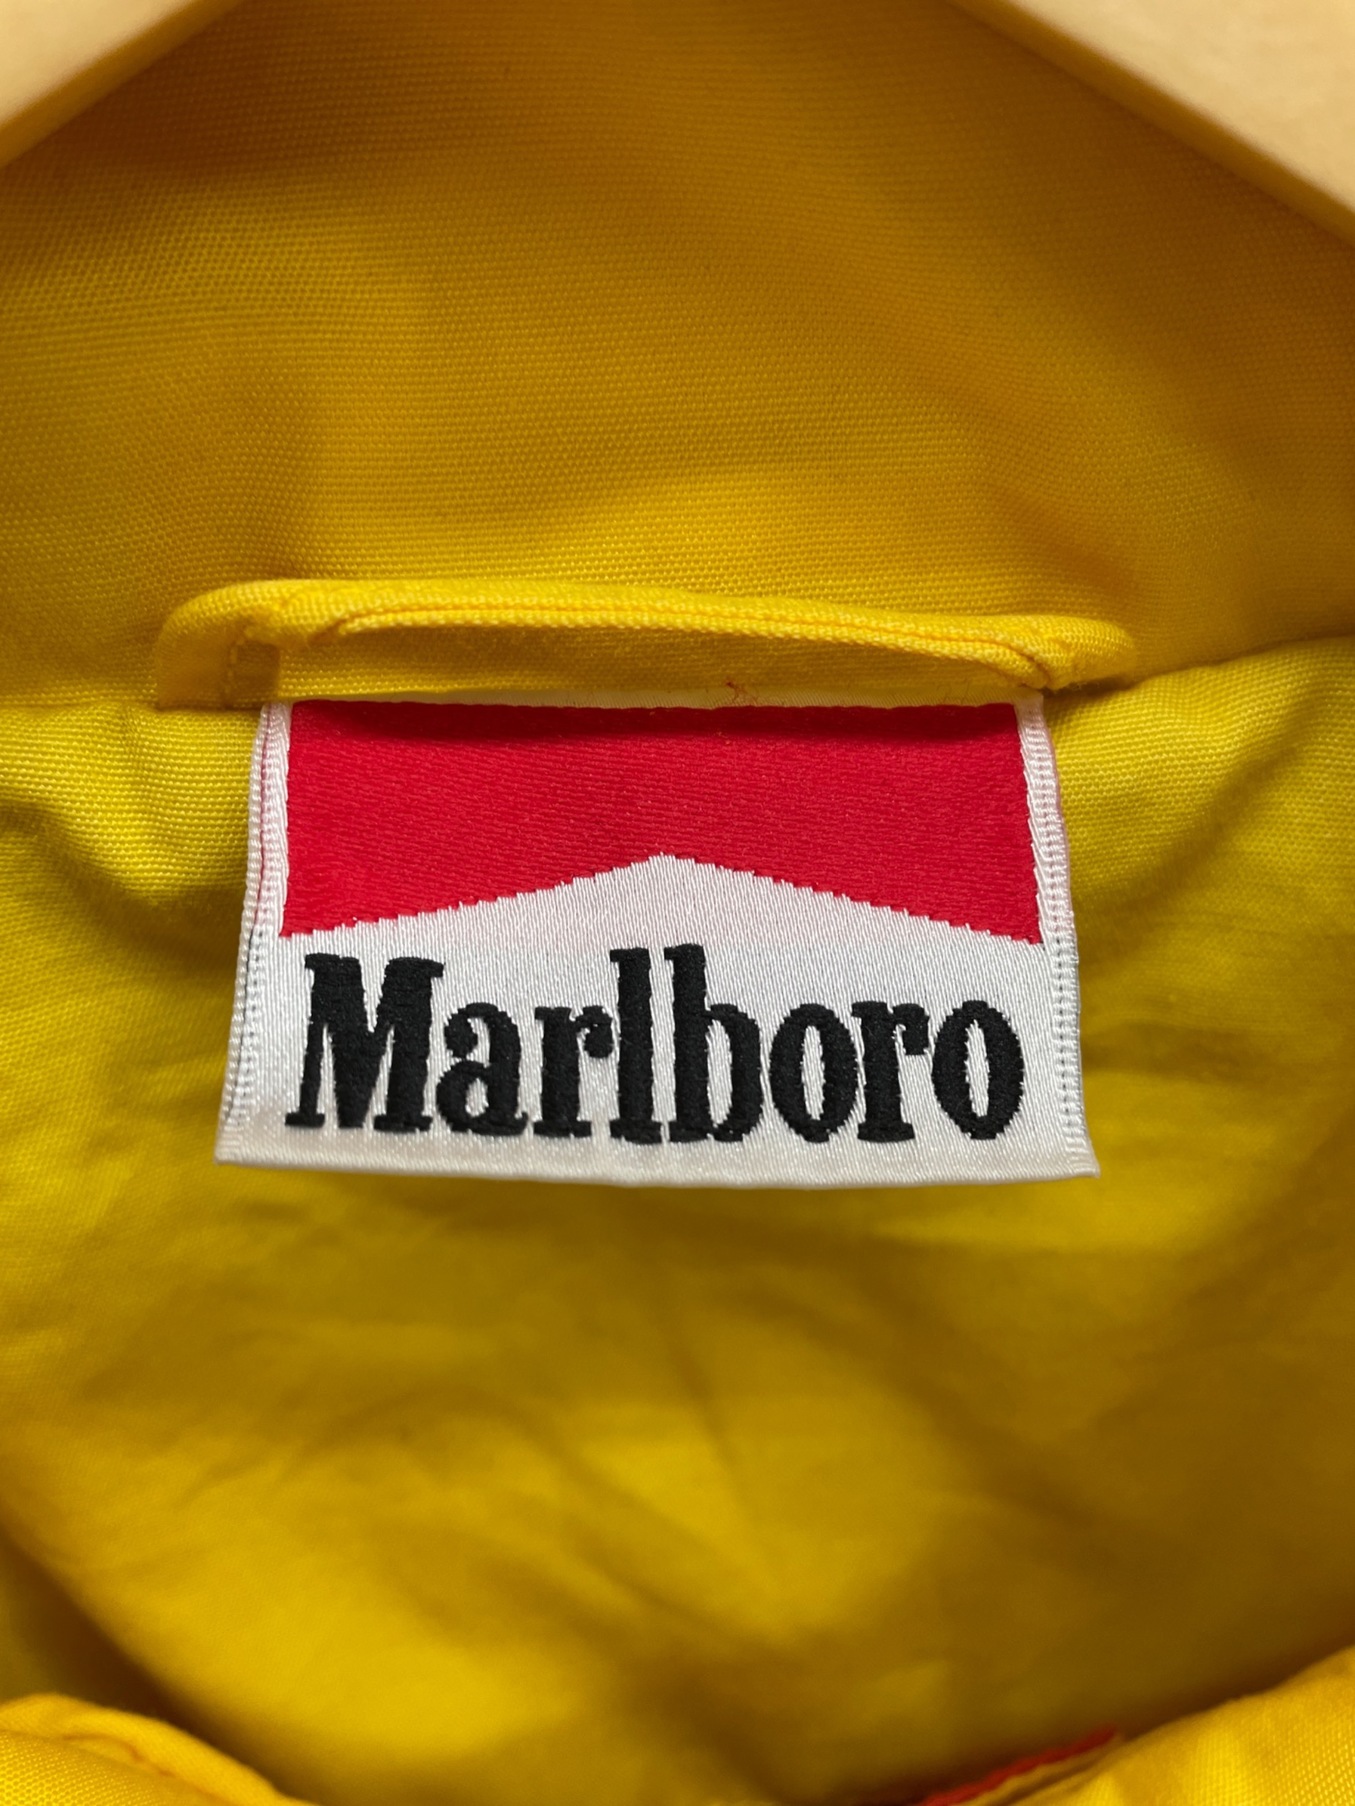 marlboro (マルボロ) シェルジャケット イエロー×ブラック サイズ:XL